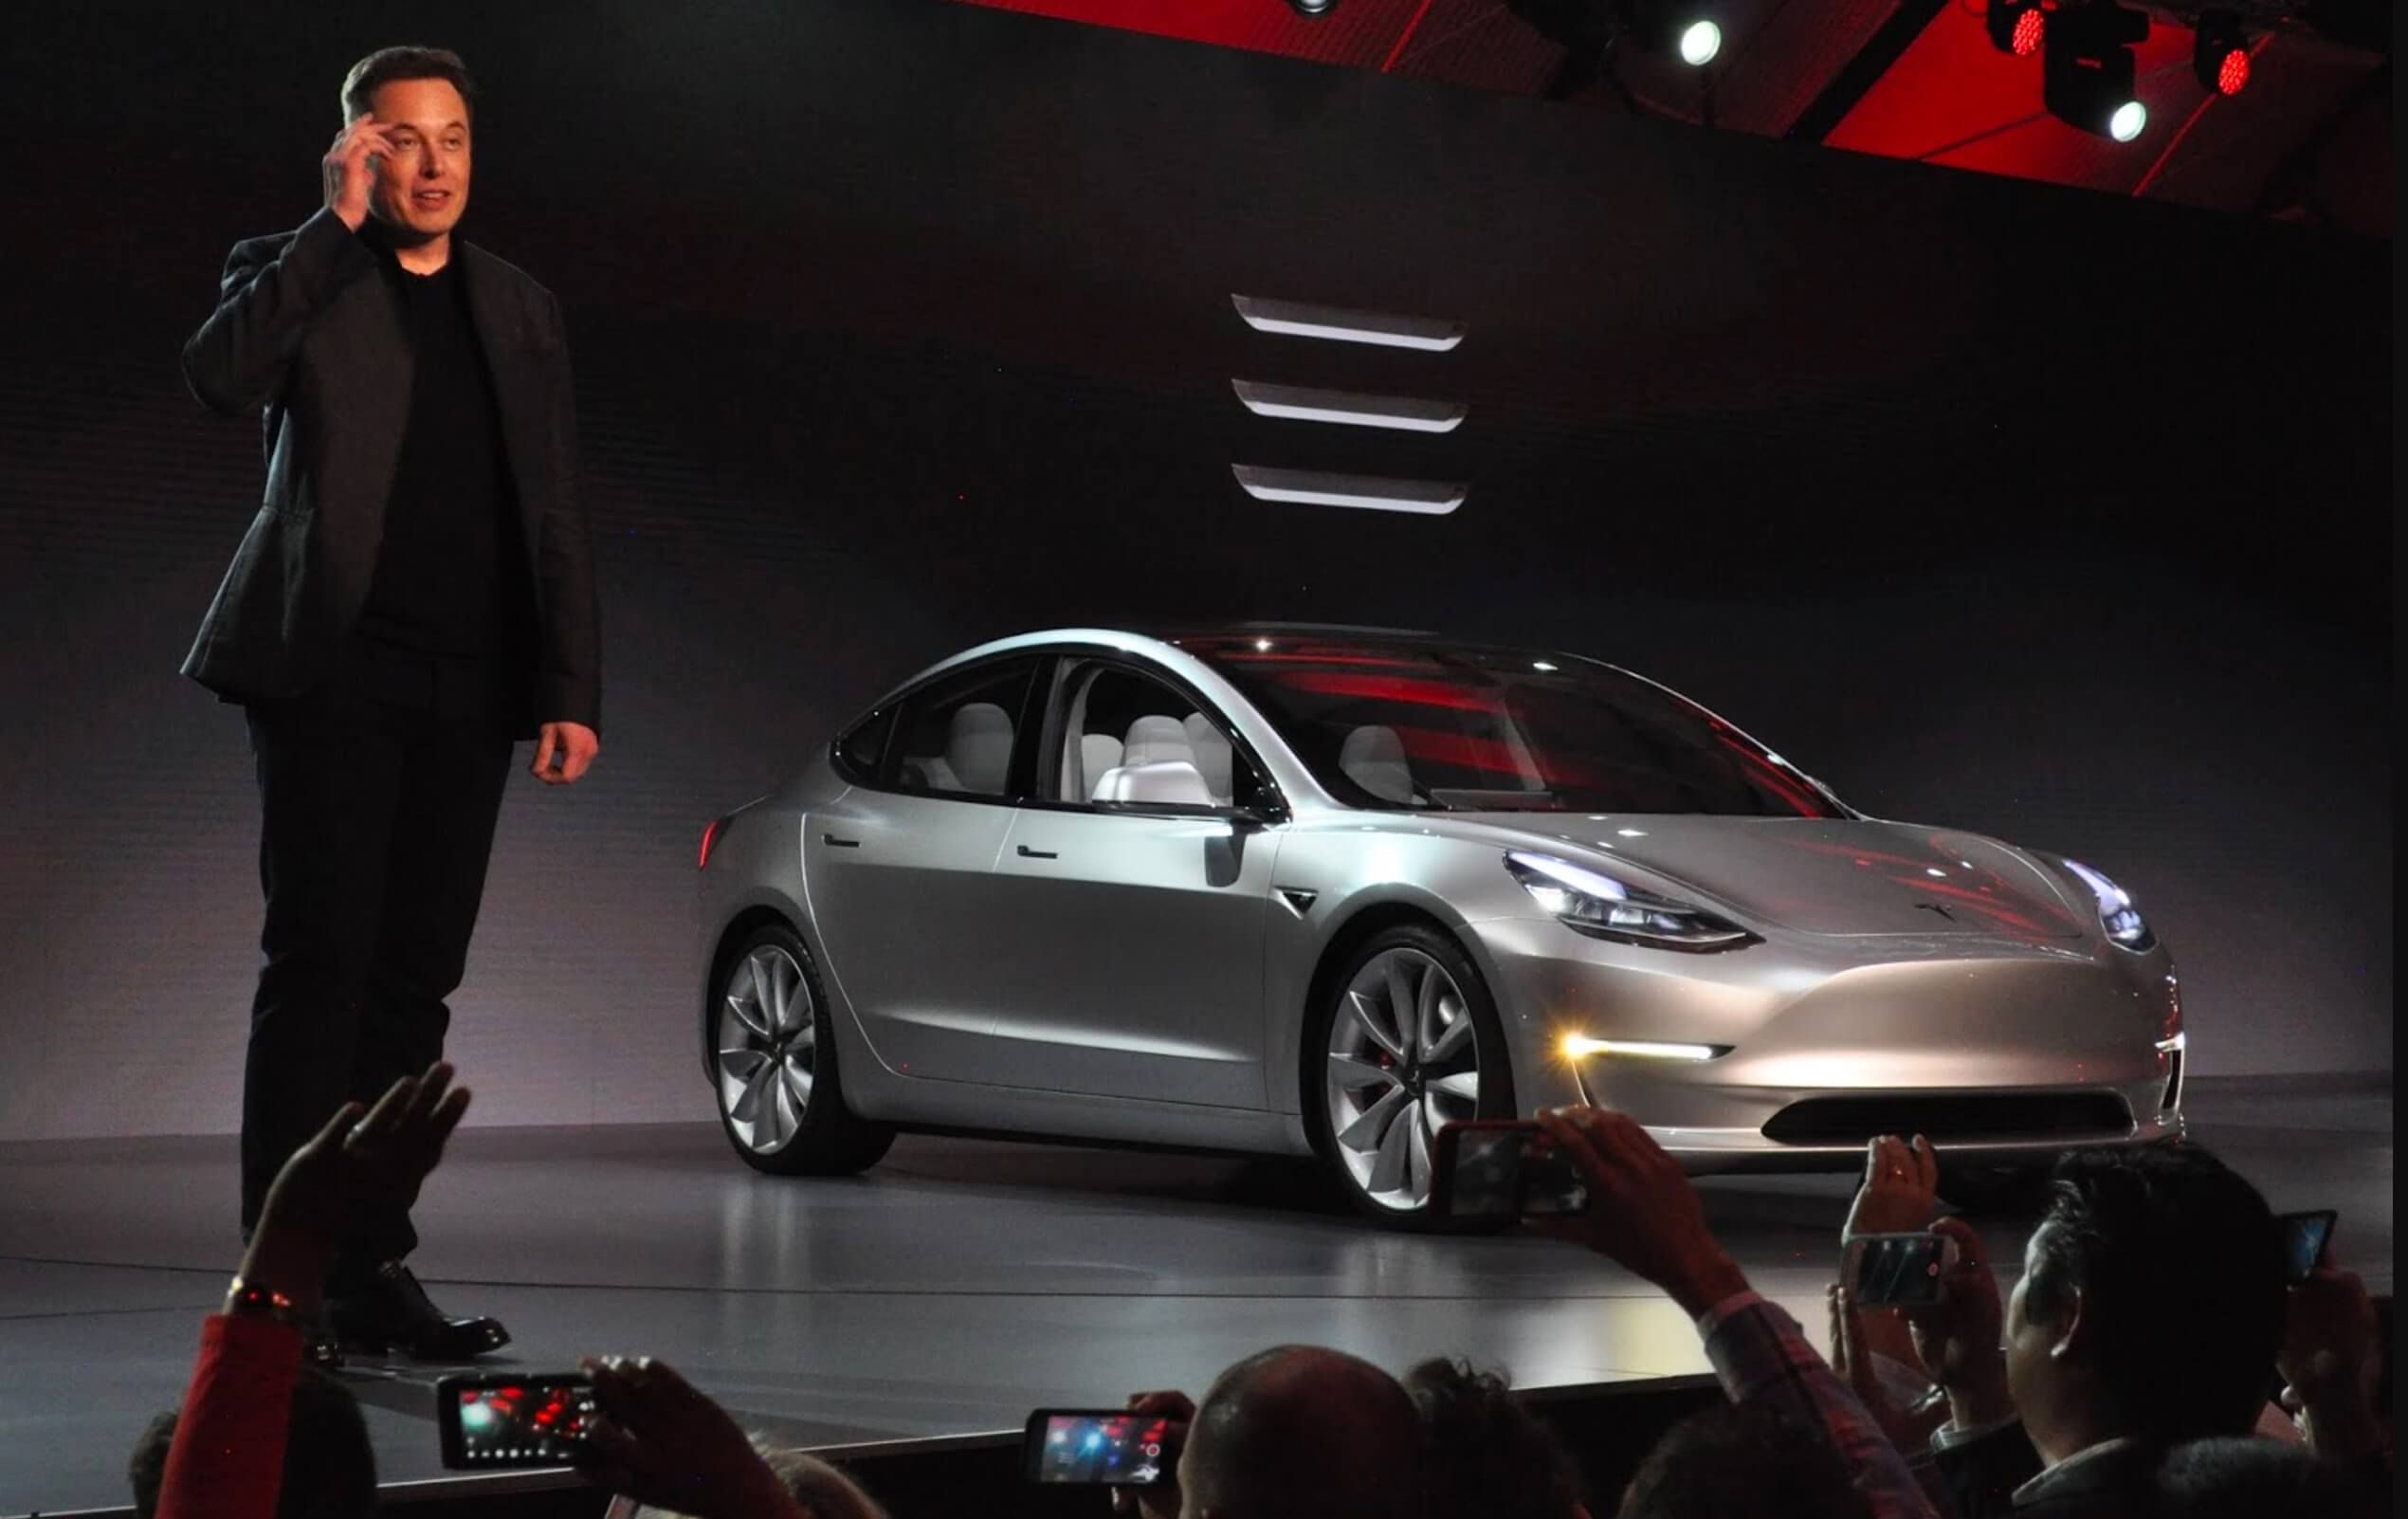 Musk di Tesla accetterebbe il fallimento se un rivale costruisse un’auto migliore, afferma un membro del consiglio di amministrazione